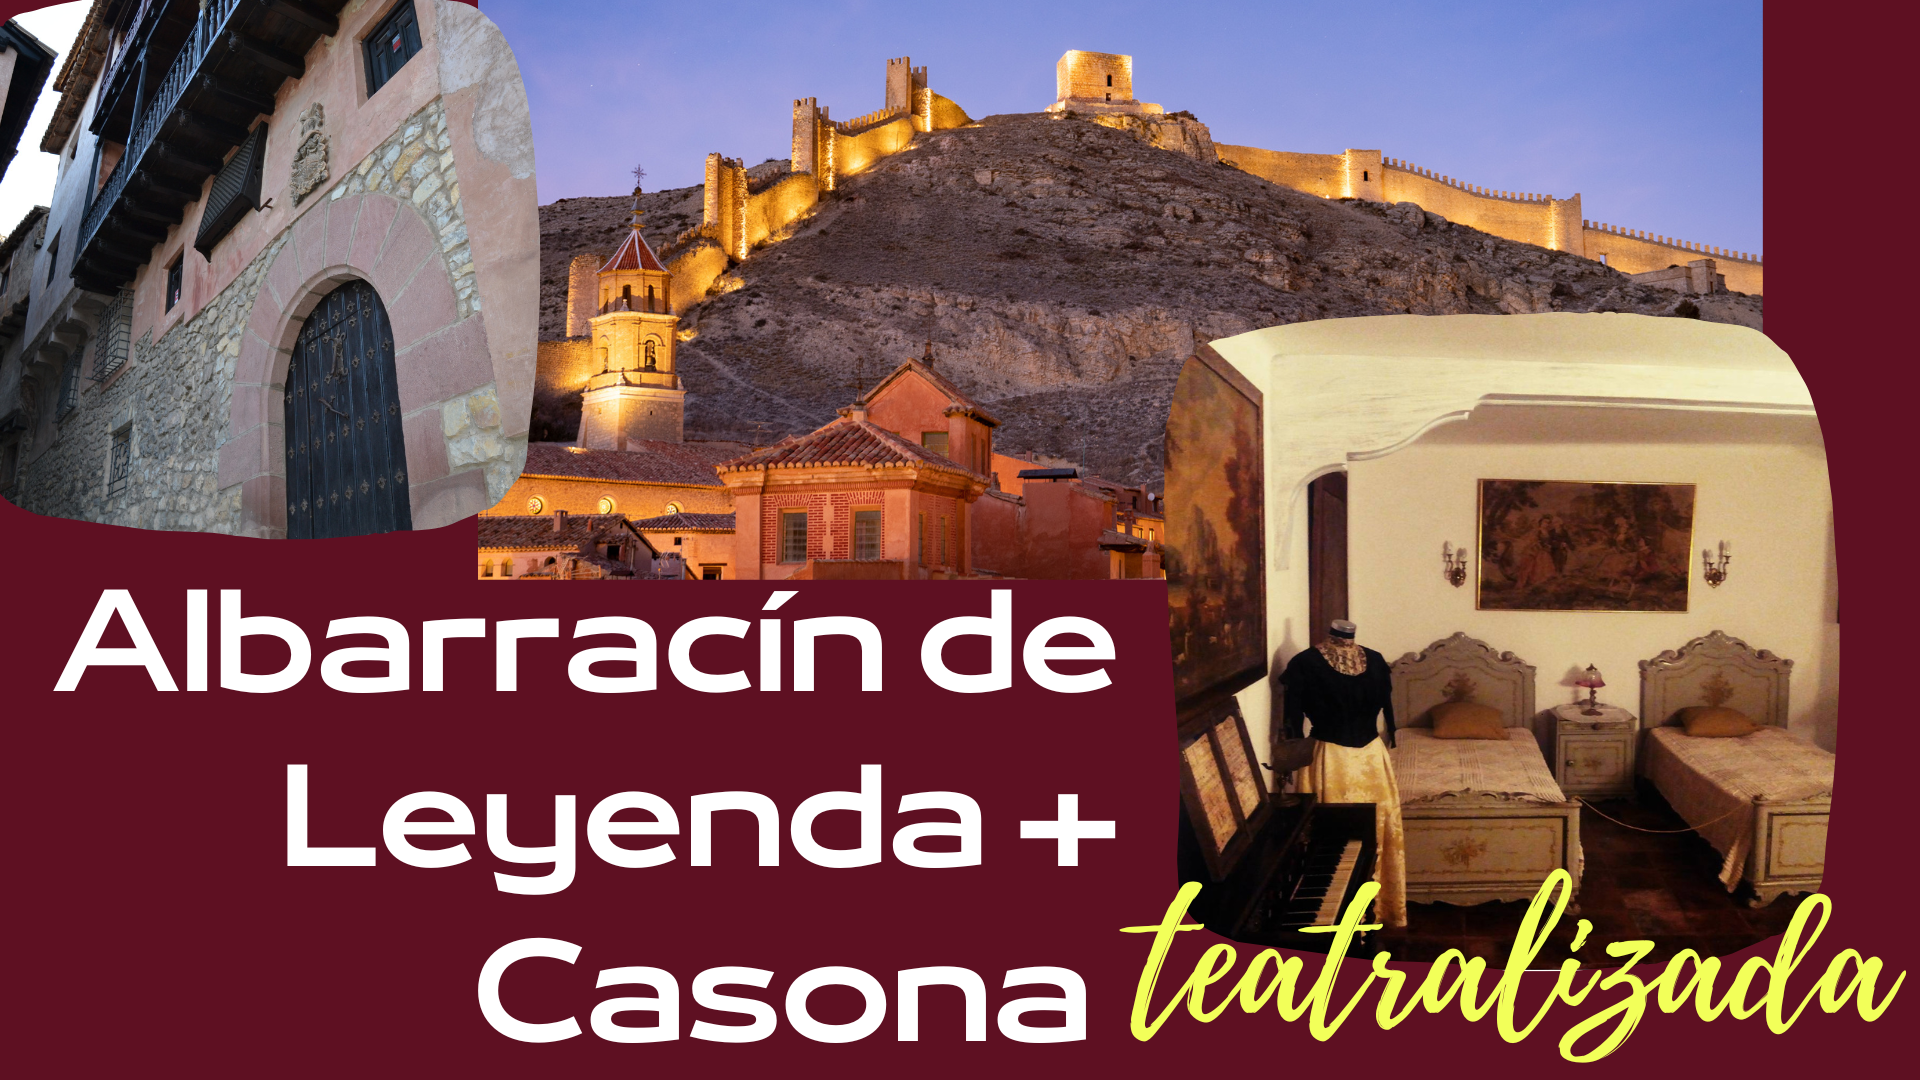 12 y 13 de Agosto: Visita guiada en Albarracín de Leyenda + Casa Museo Teatralizada en su interior!